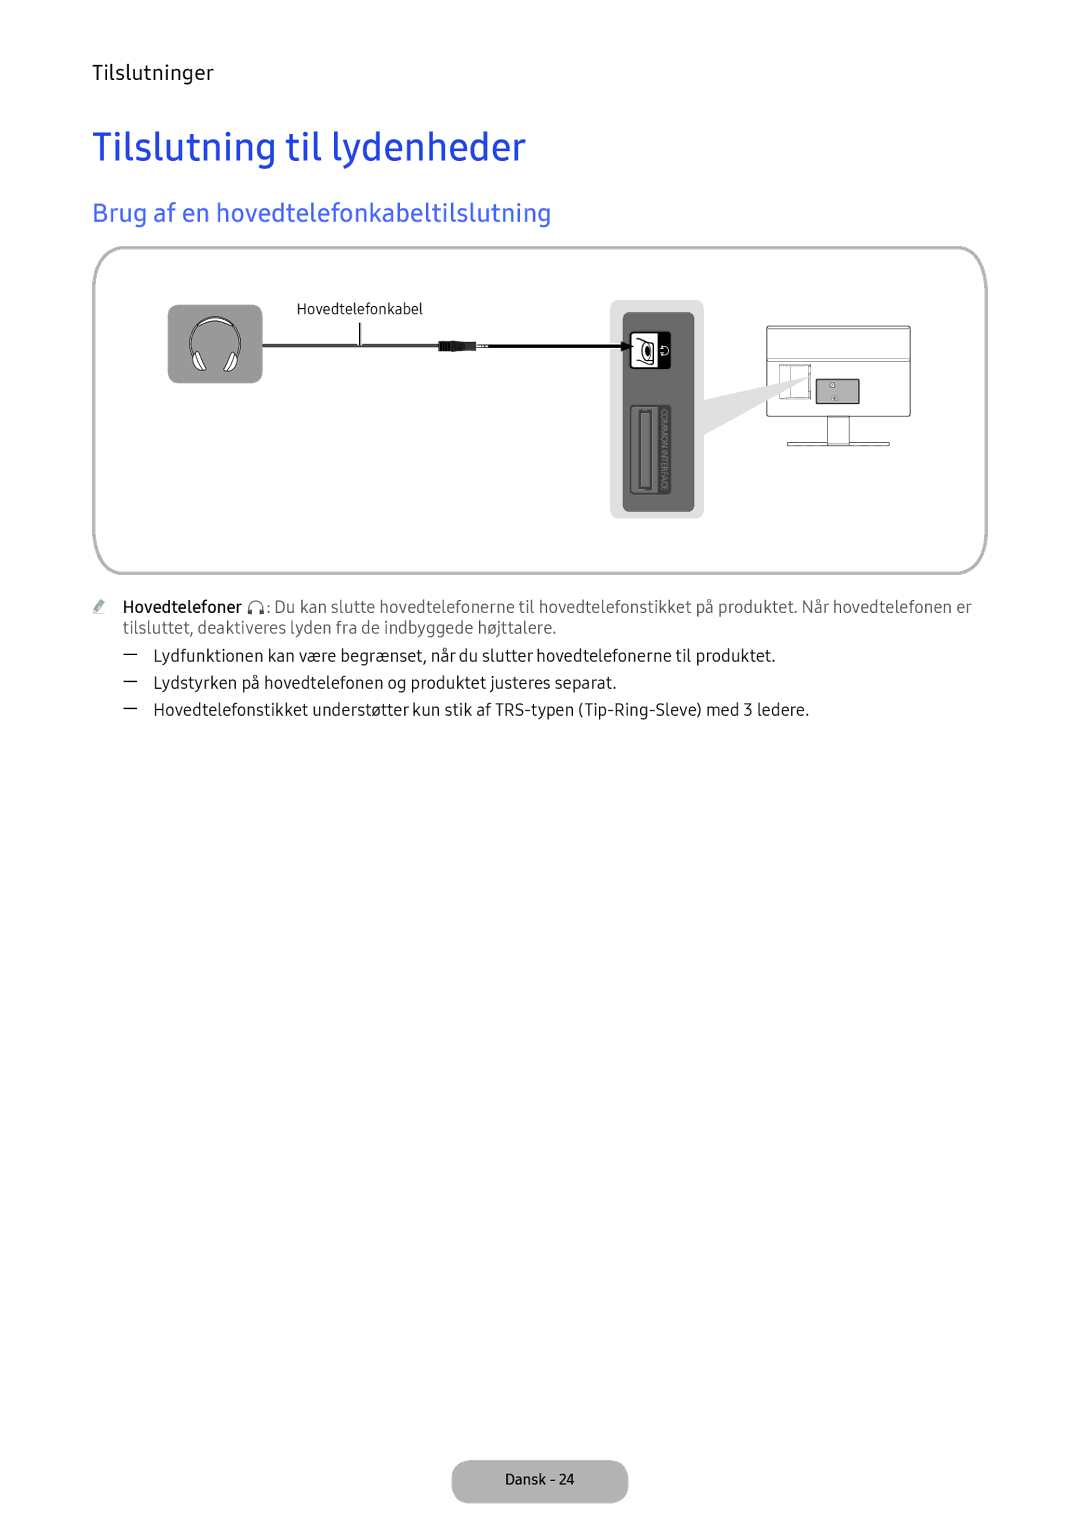 Samsung LT24E390EX/XE manual Tilslutning til lydenheder, Brug af en hovedtelefonkabeltilslutning 